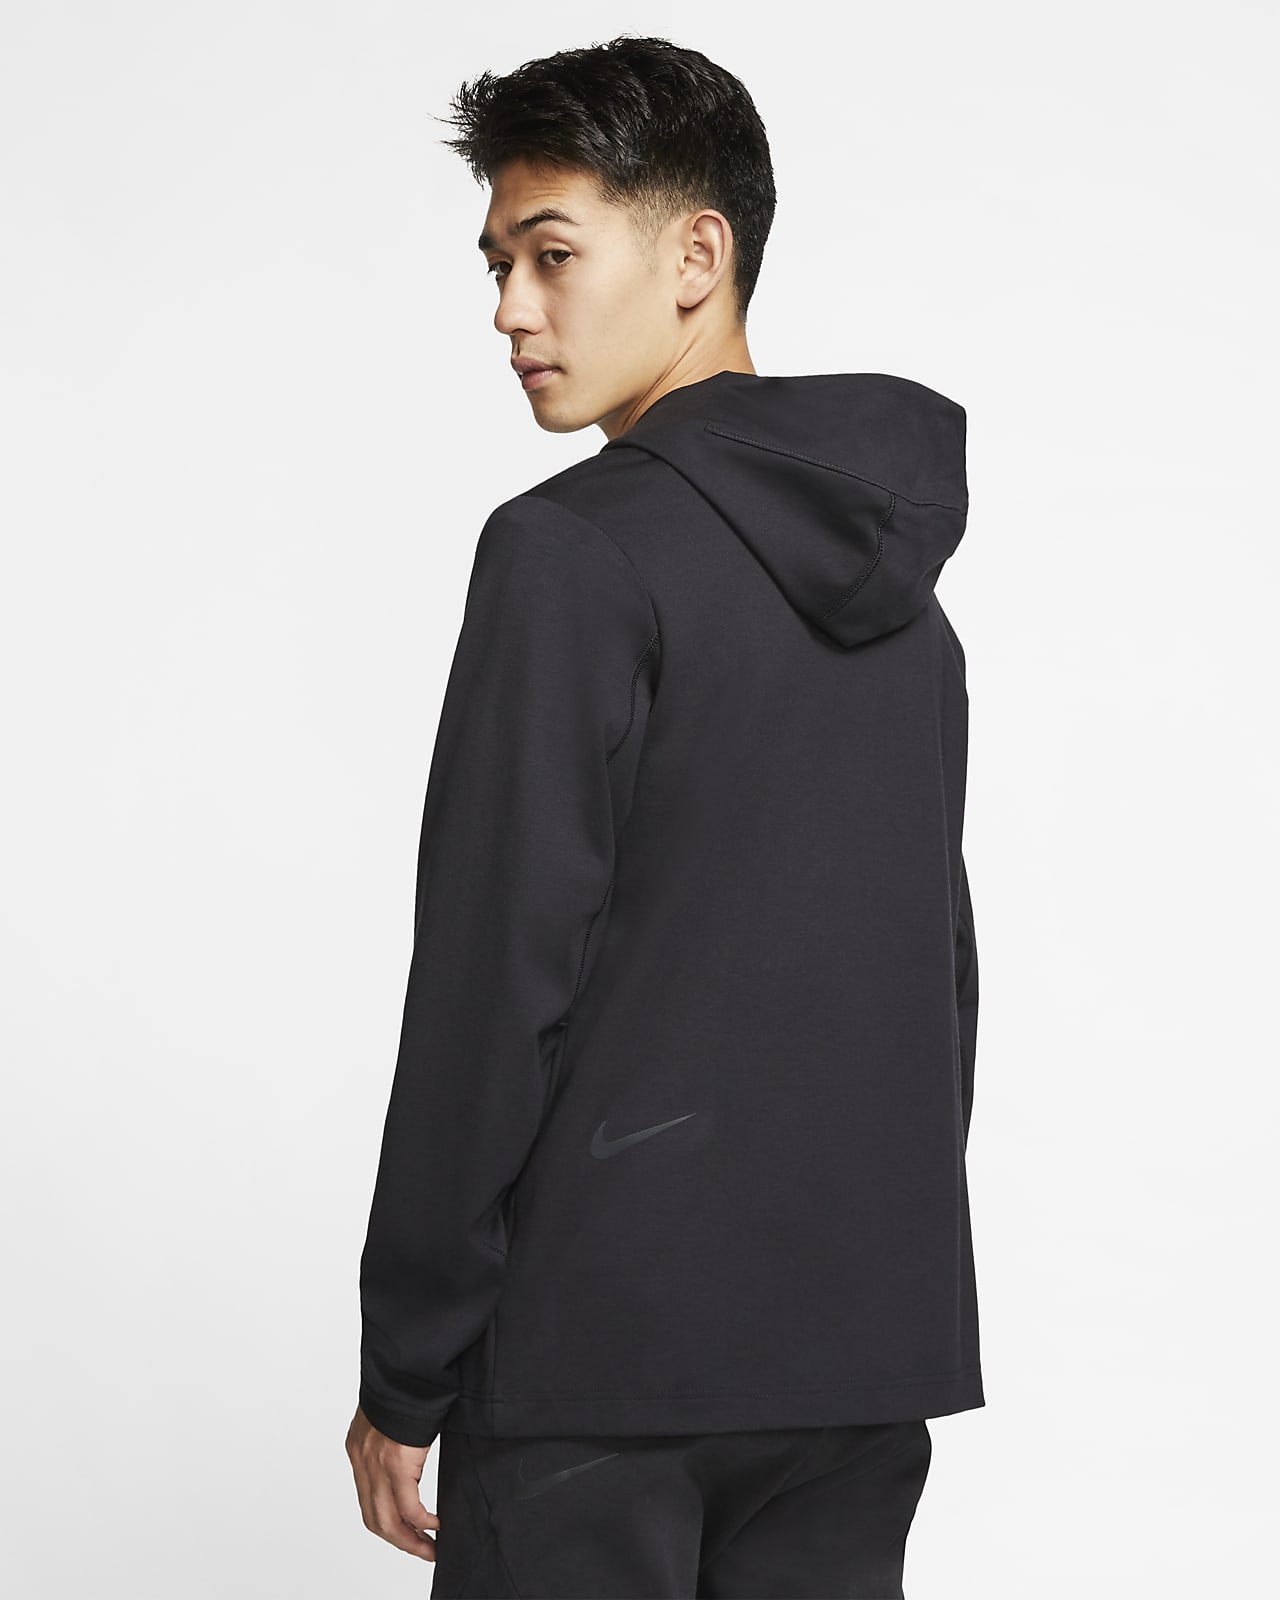 Nike Sportswear Tech Pack Jacket - Tech Logo